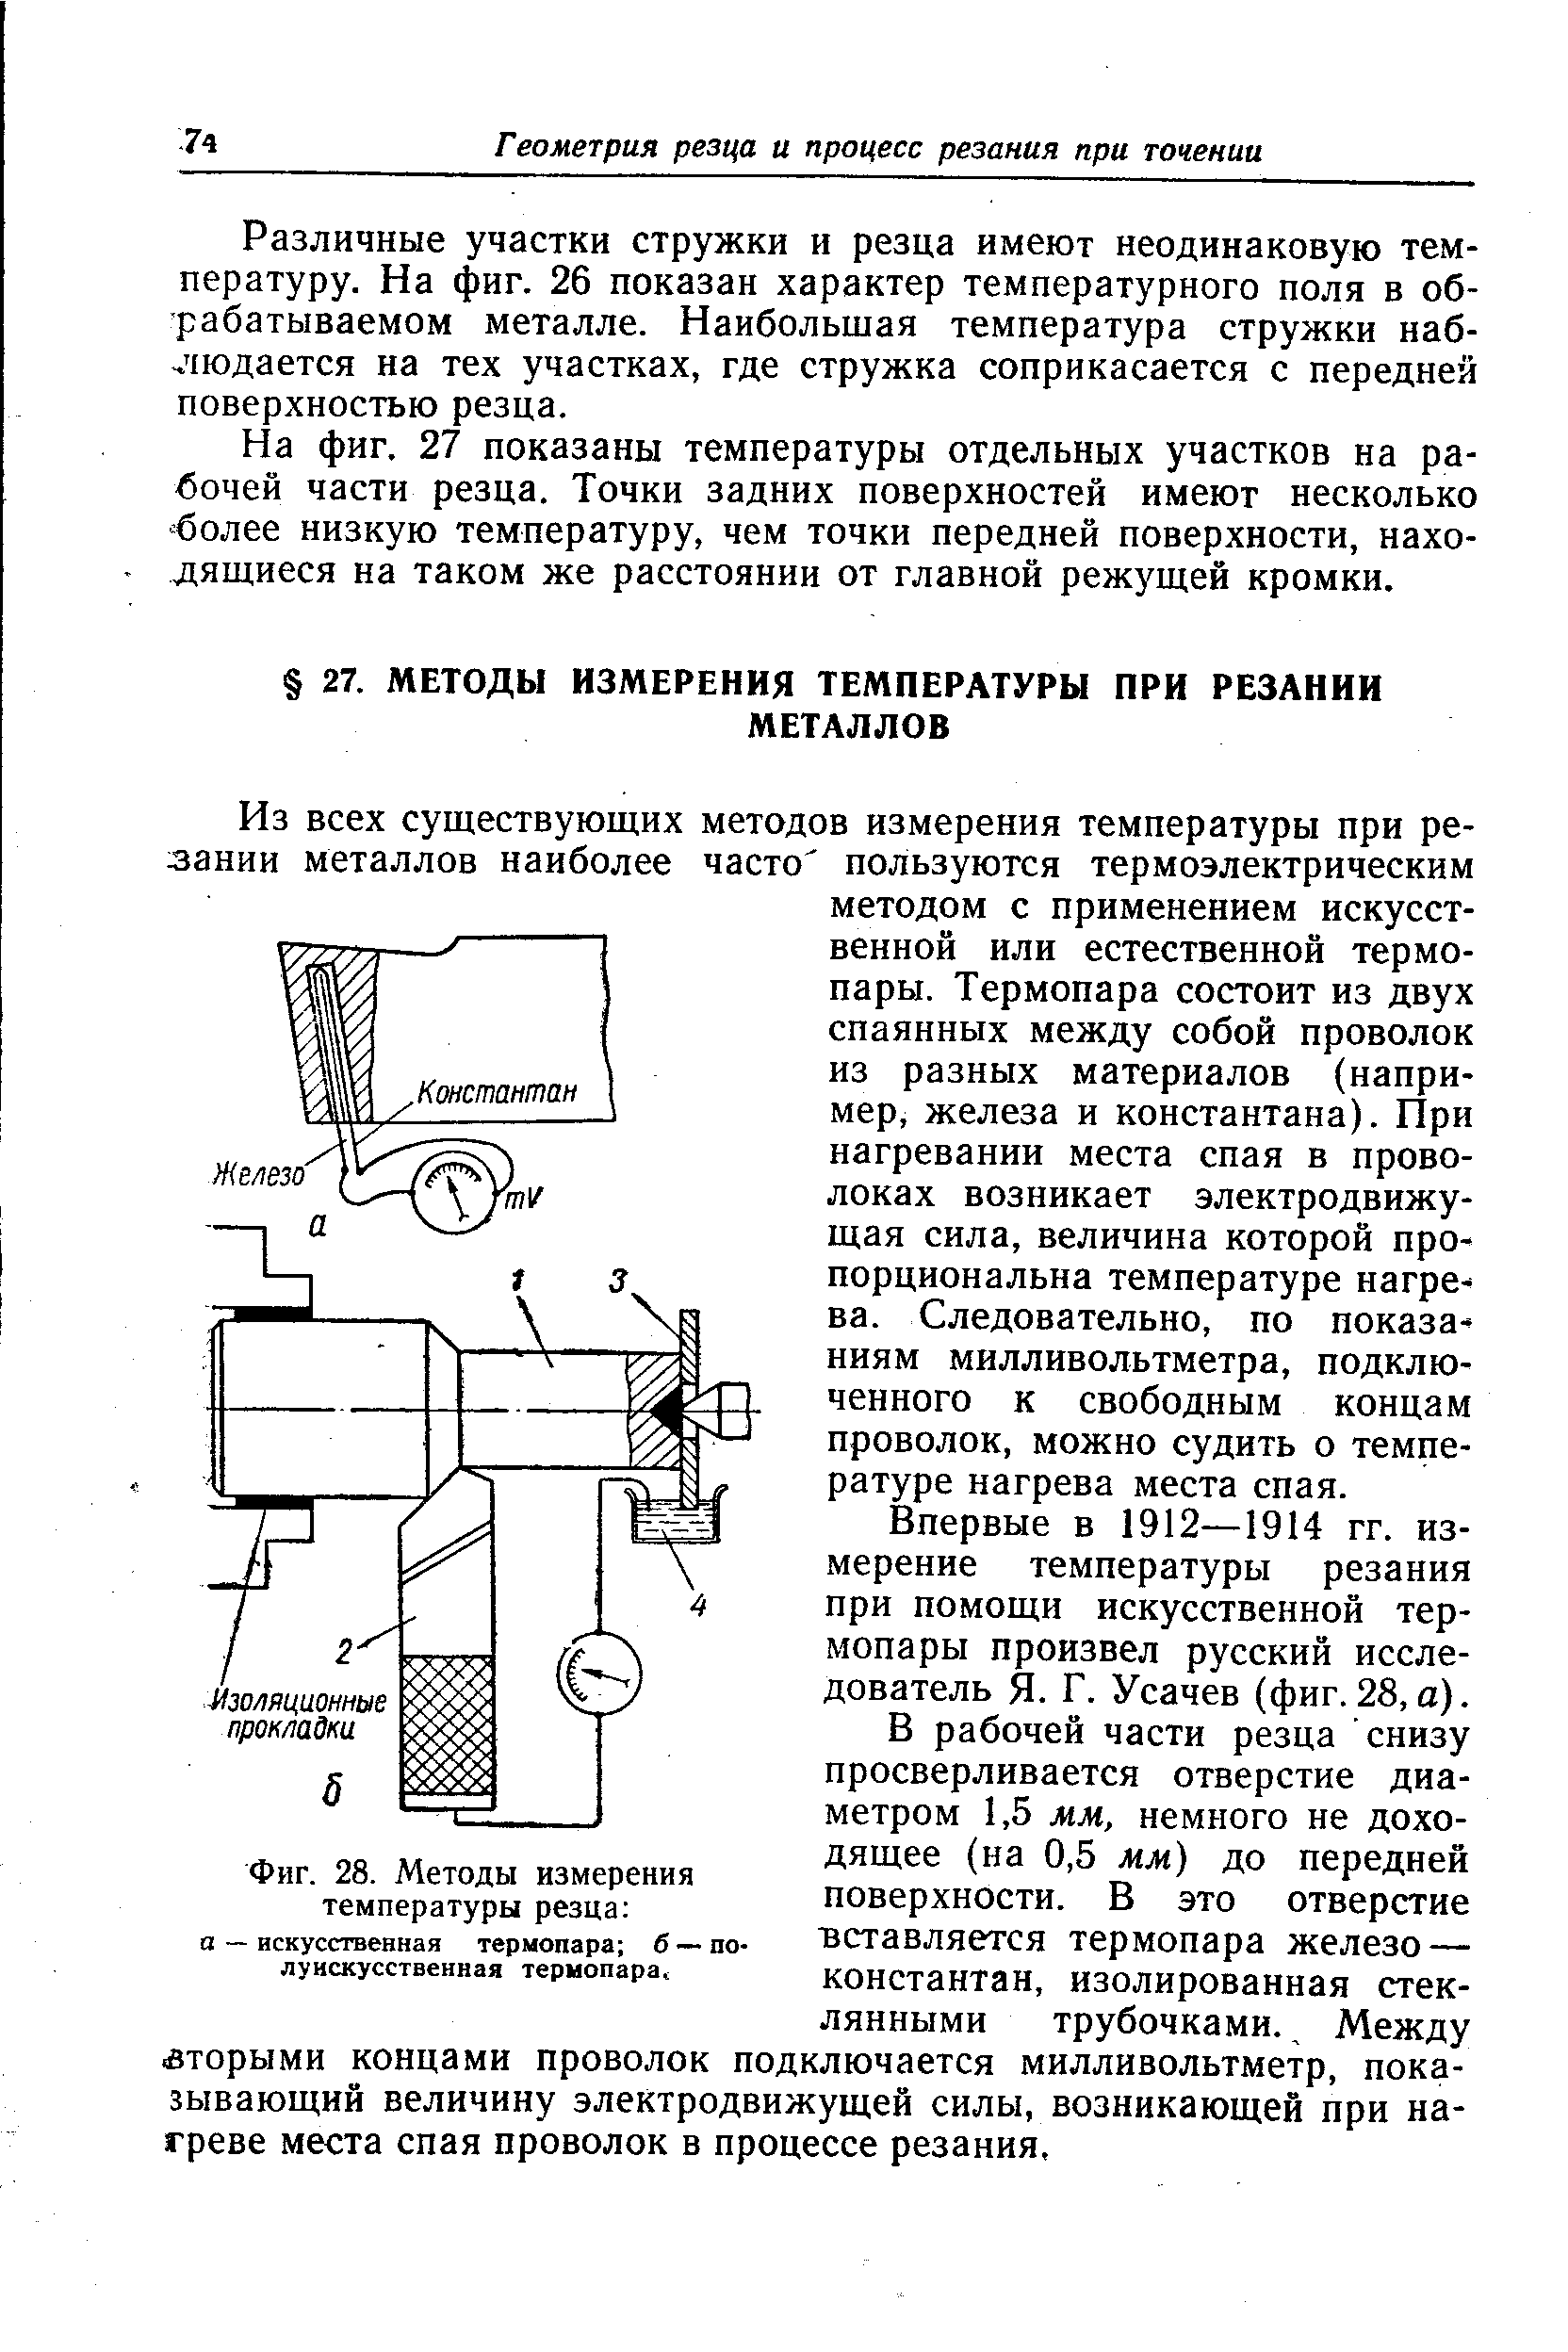 Впервые в 1912—1914 гг. измерение температуры резания при помощи искусственной термопары произвел русский исследователь Я. Г. Усачев (фиг. 28, а).
